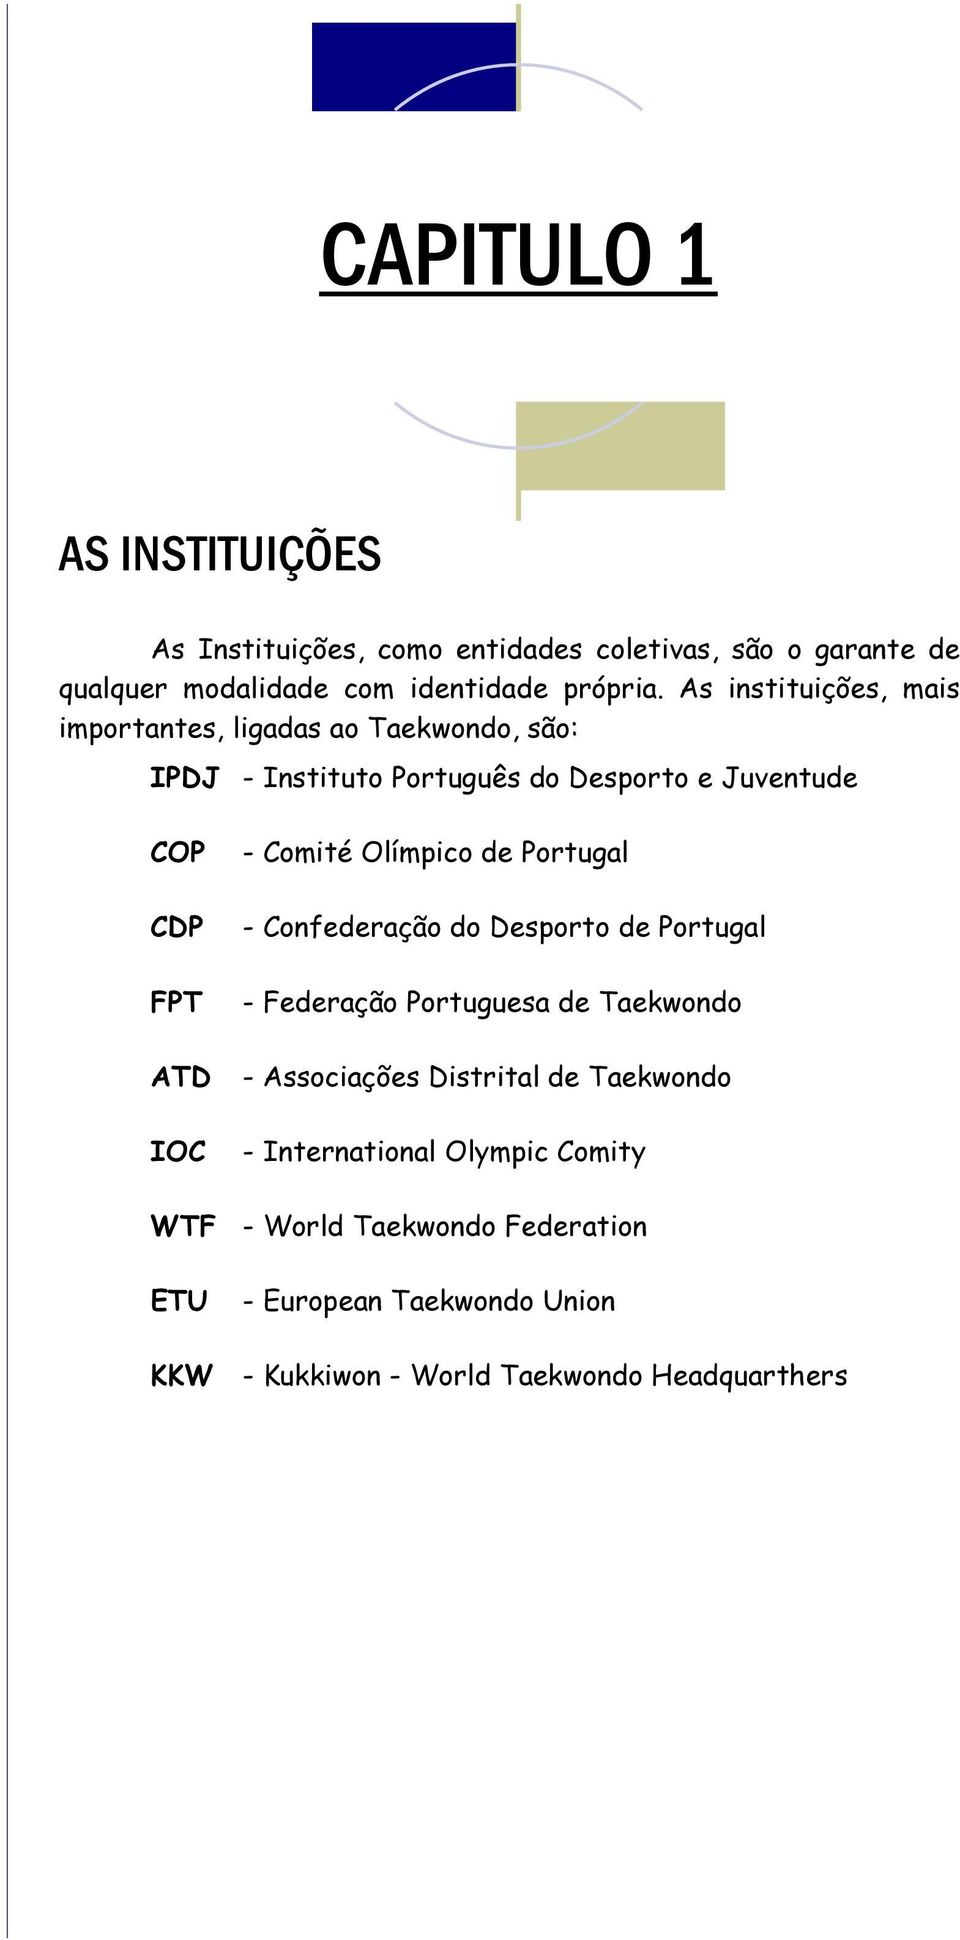 Comité Olímpico de Portugal - Confederação do Desporto de Portugal - Federação Portuguesa de Taekwondo - Associações Distrital de